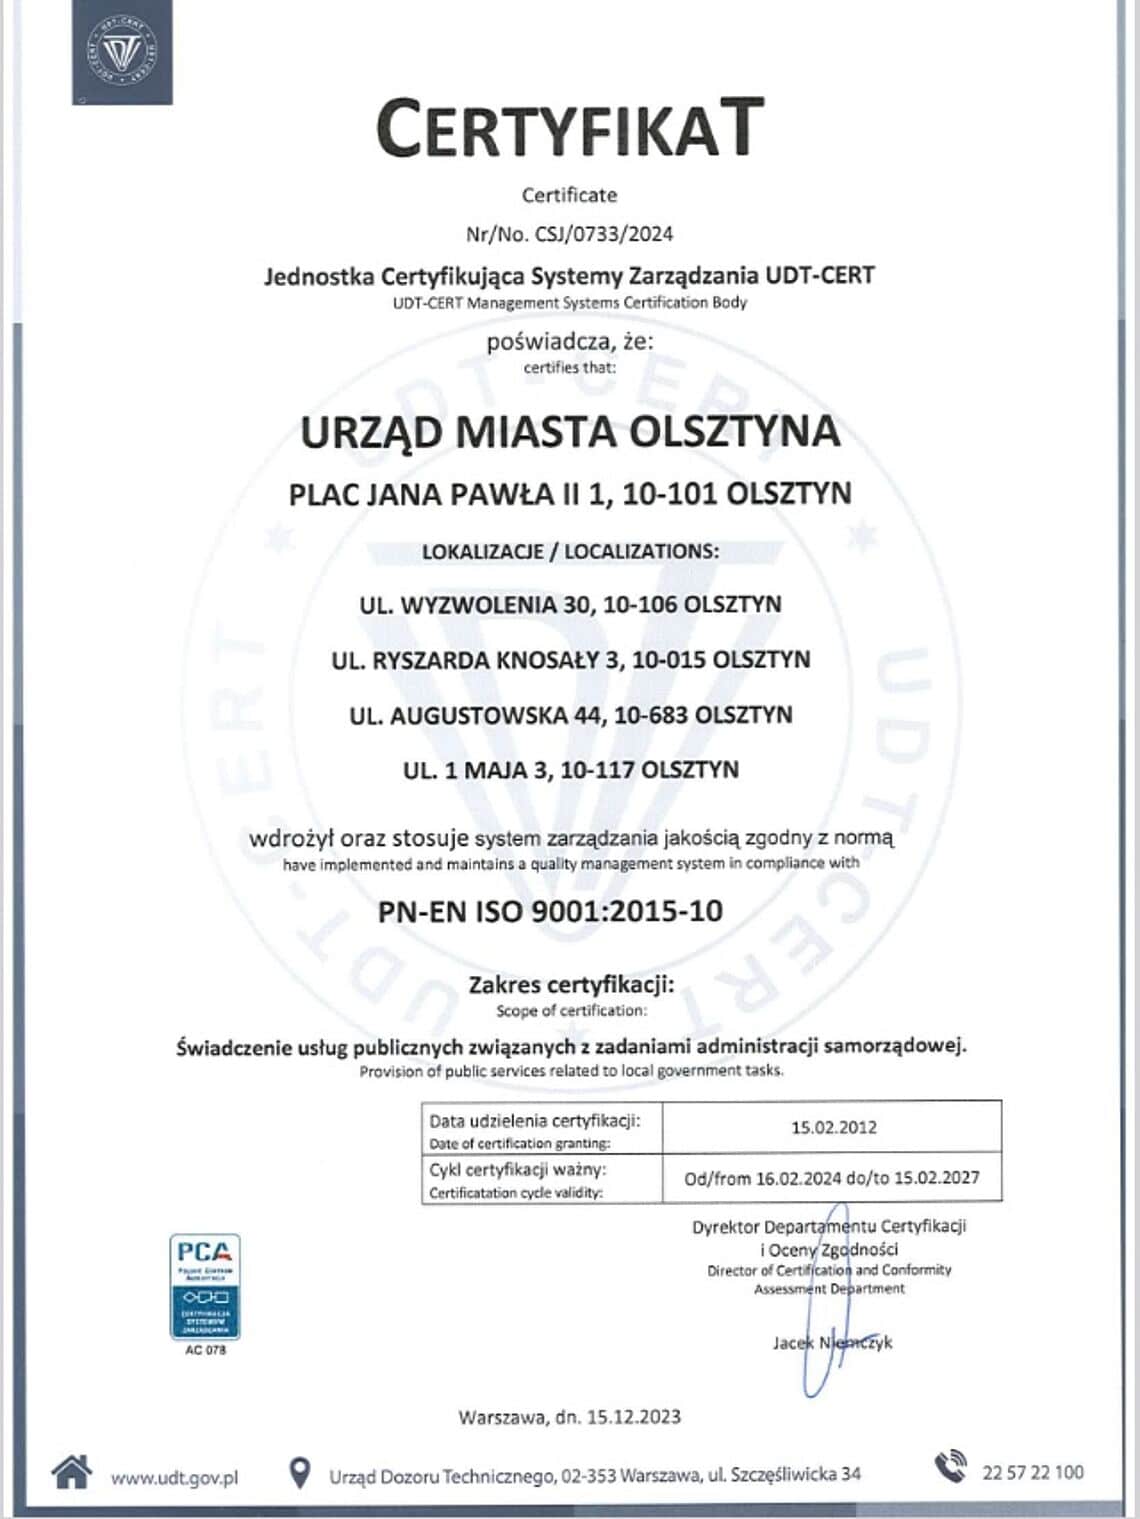 Olsztyński urząd utrzymuje wysoki standard – certyfikat ISO ponownie przyznany Urząd Miasta Olsztyna Olsztyn, Wiadomości, zShowcase